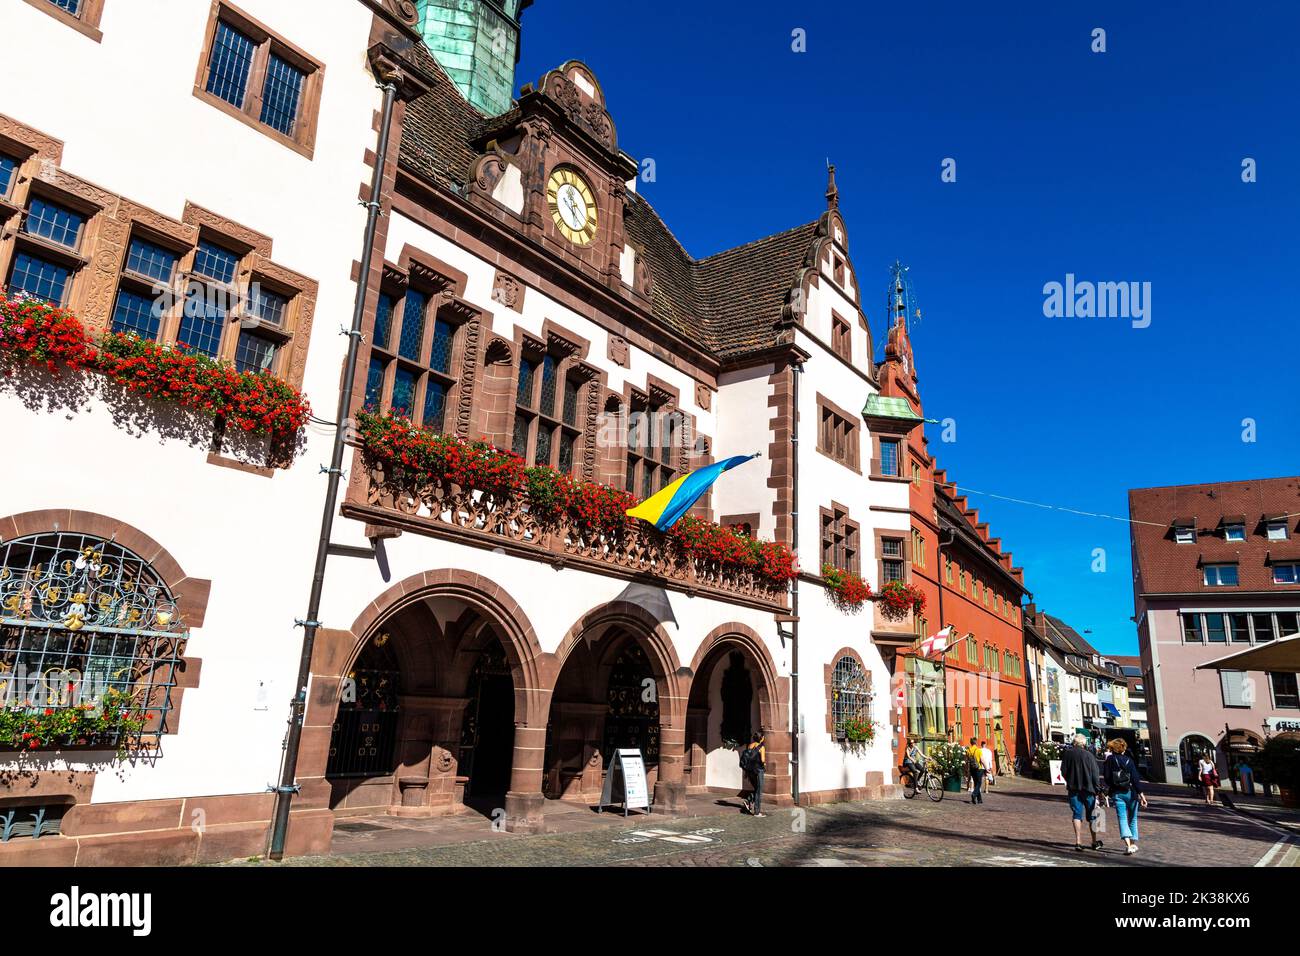 Exterior of the 16th century New Town Hall (Neues Rathaus), Rathausplatz, Freiburg im Breisgau, Germany Stock Photo